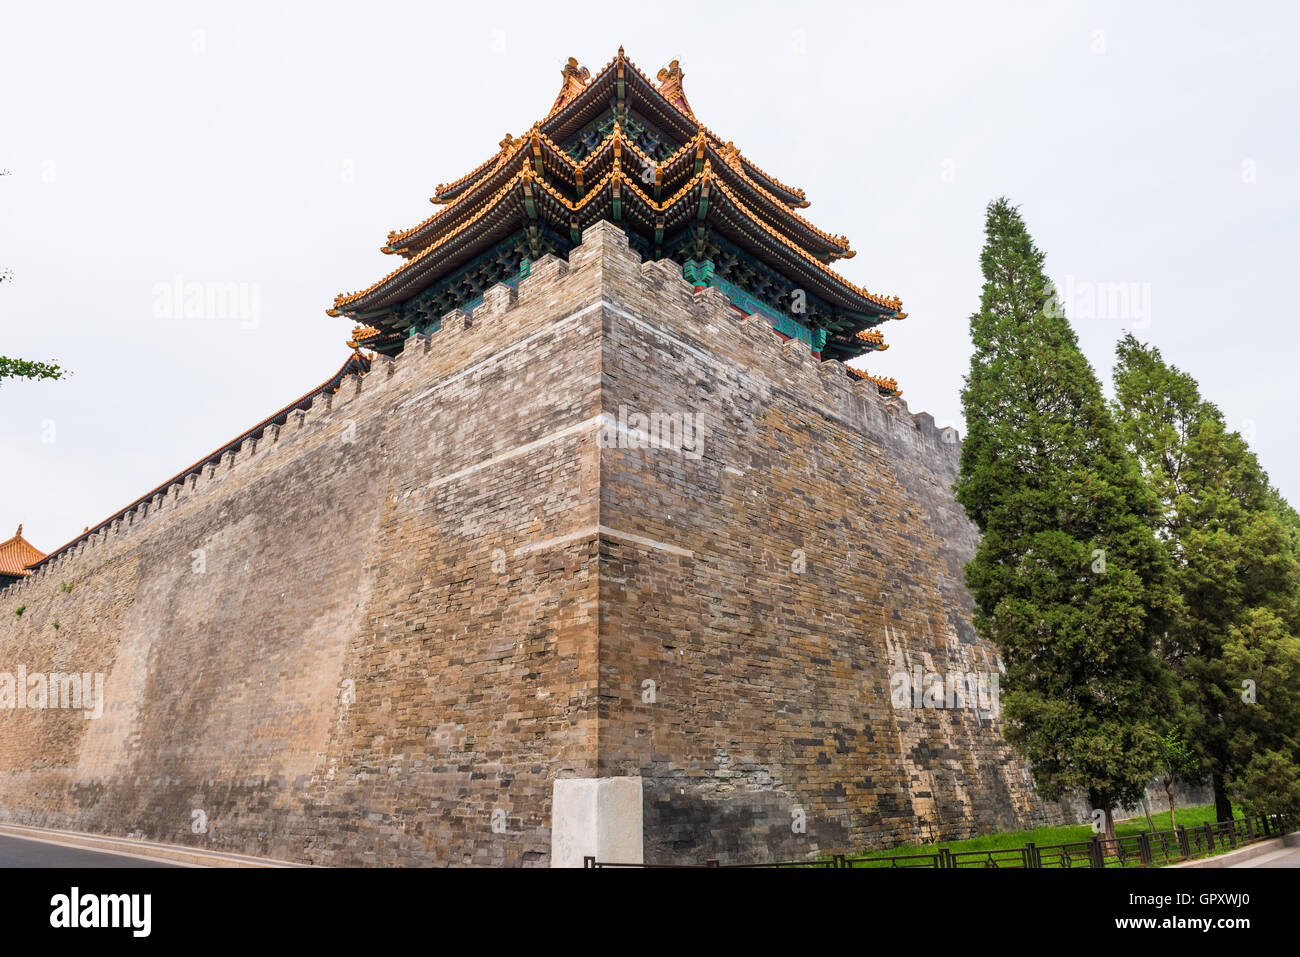 Palazzi, pagode all'interno del territorio della Città Proibita Museum di Pechino nel cuore della city in Cina. Foto Stock